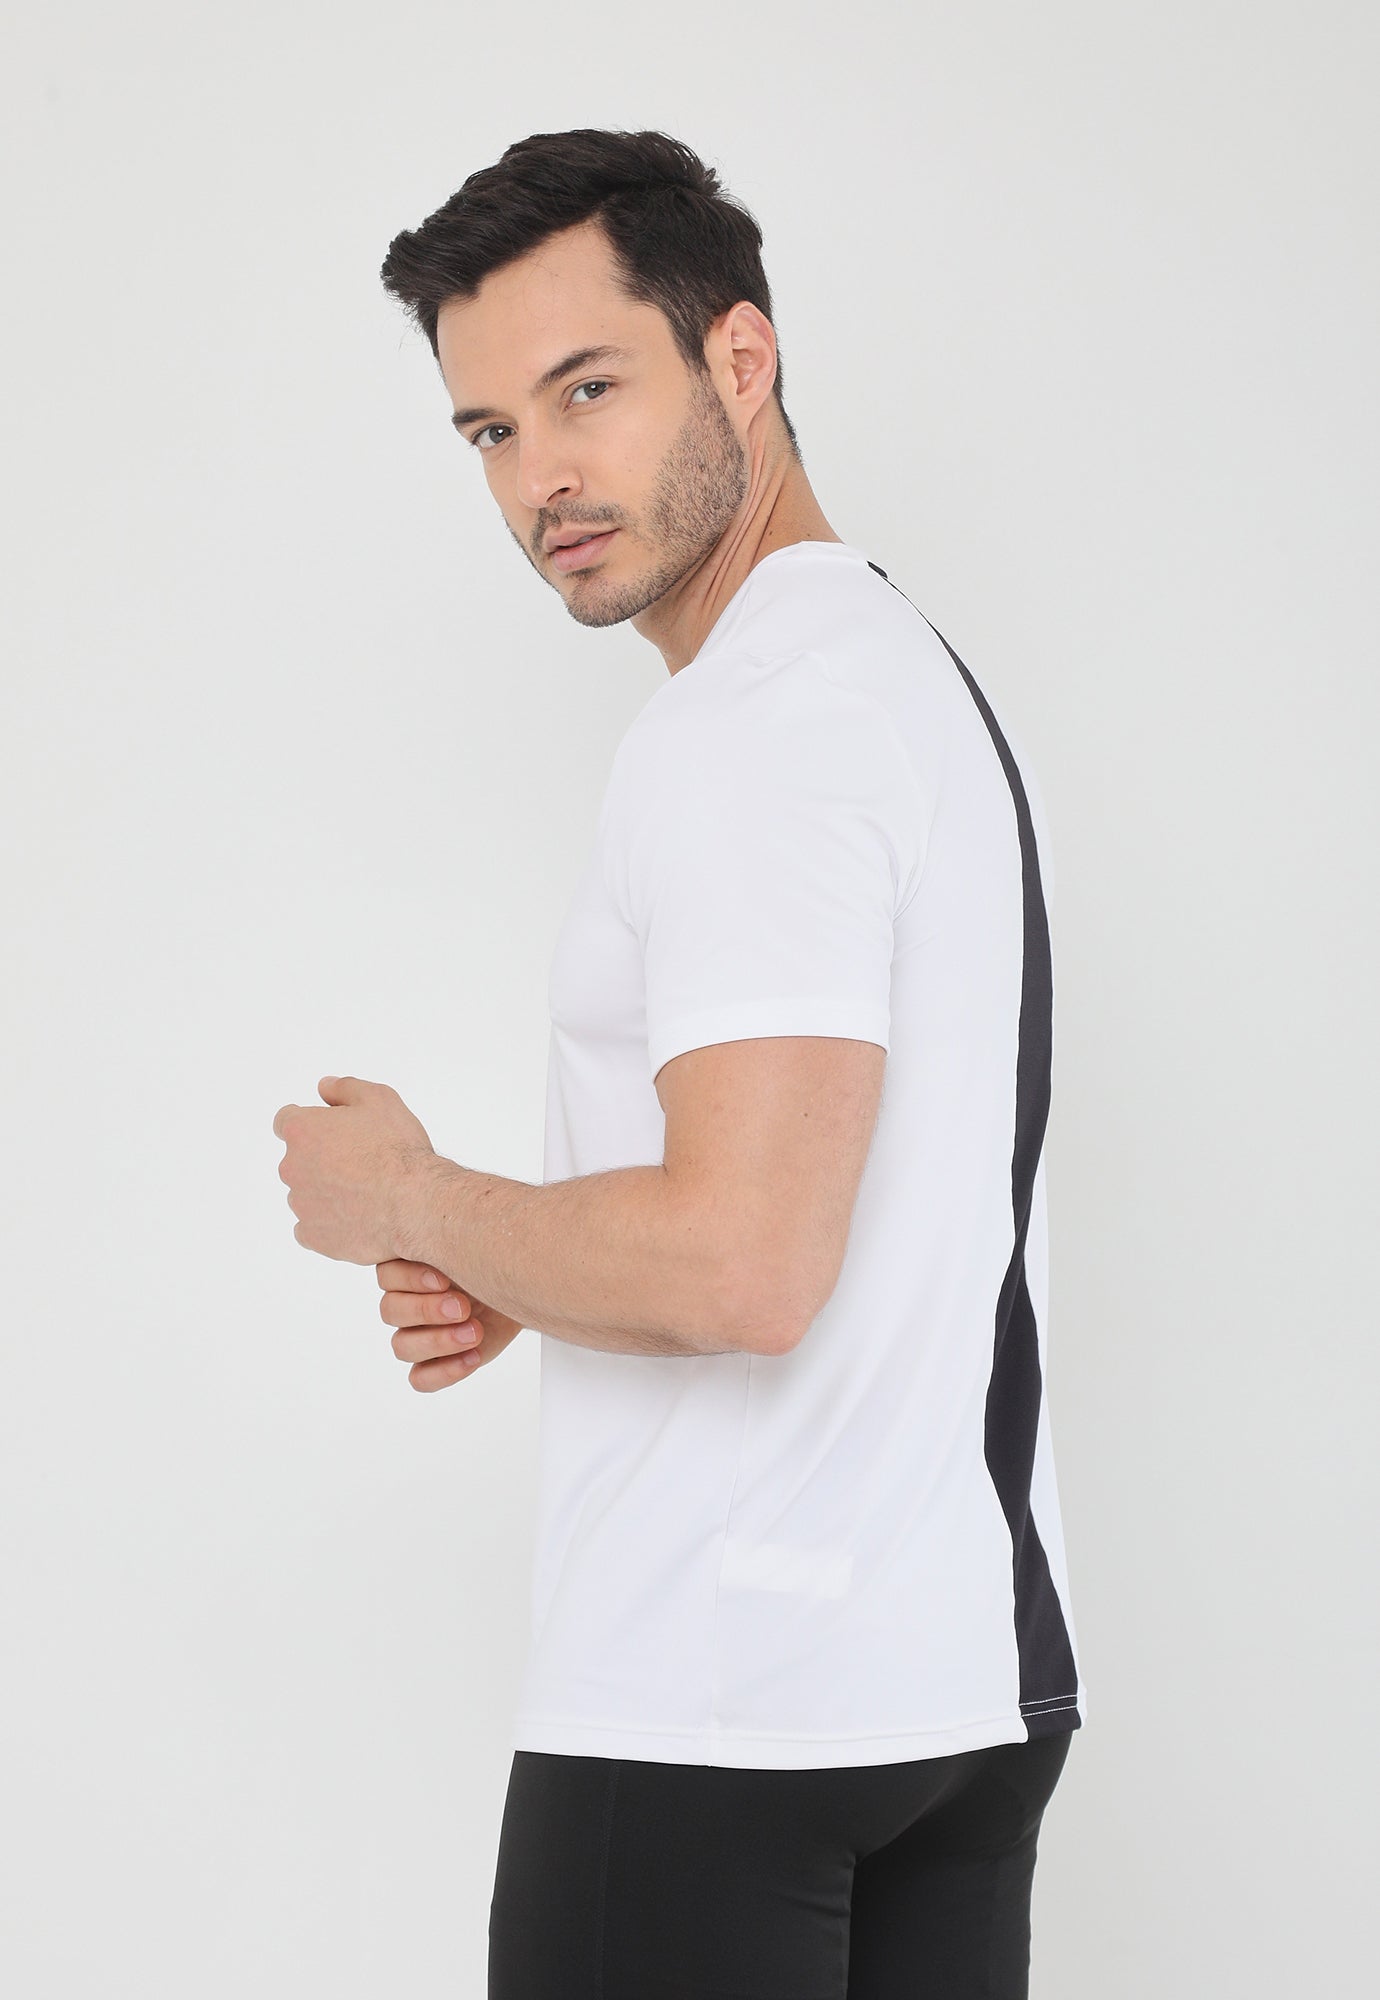 Camiseta deportiva blanco hueso manga corta, bloque en centro espalda y cuello redondo para hombre